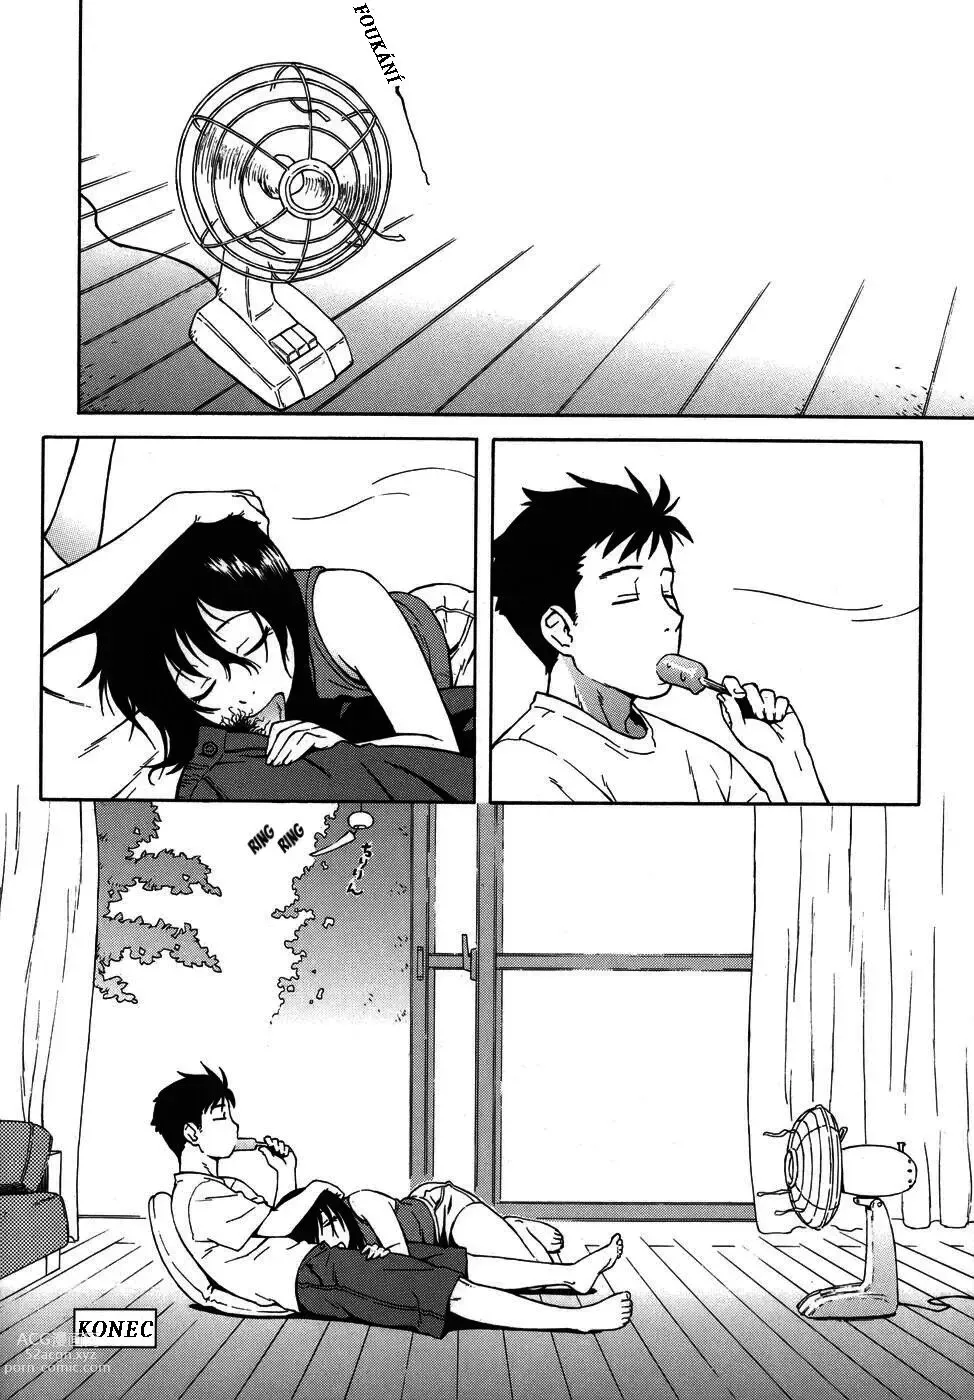 Page 16 of manga Shampoo